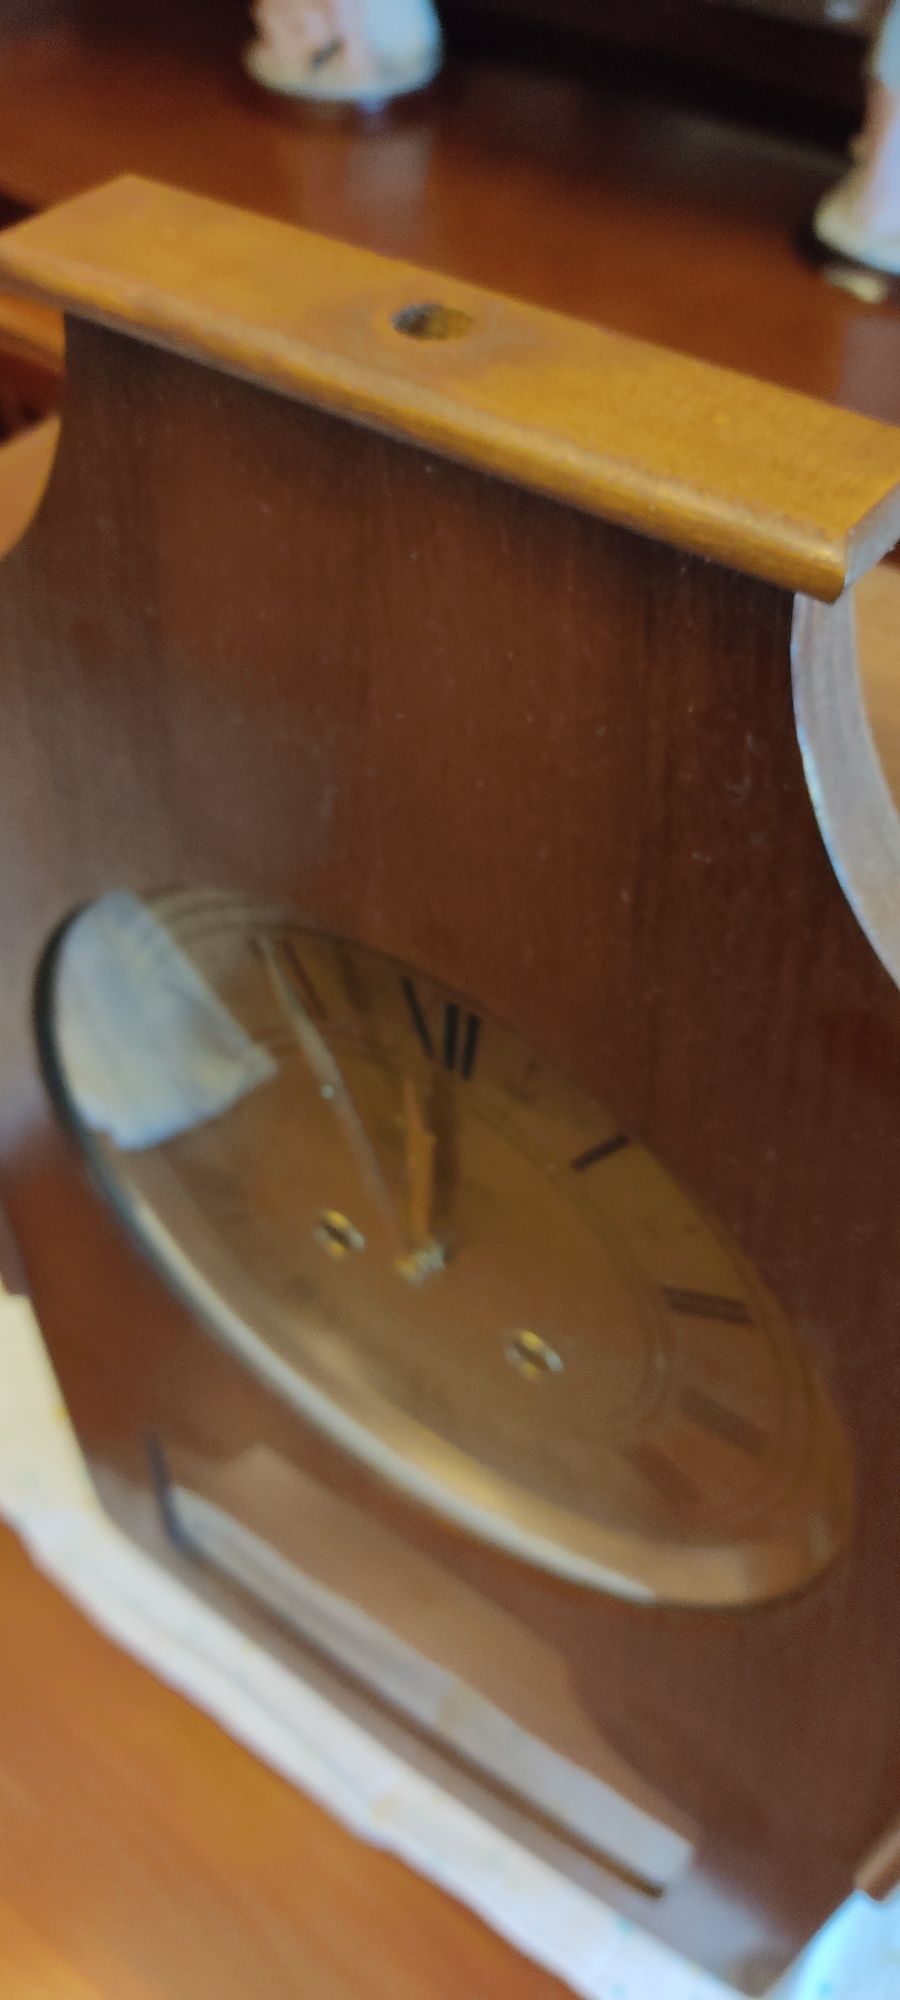 Relógio de parede com pêndulo marca Reguladora